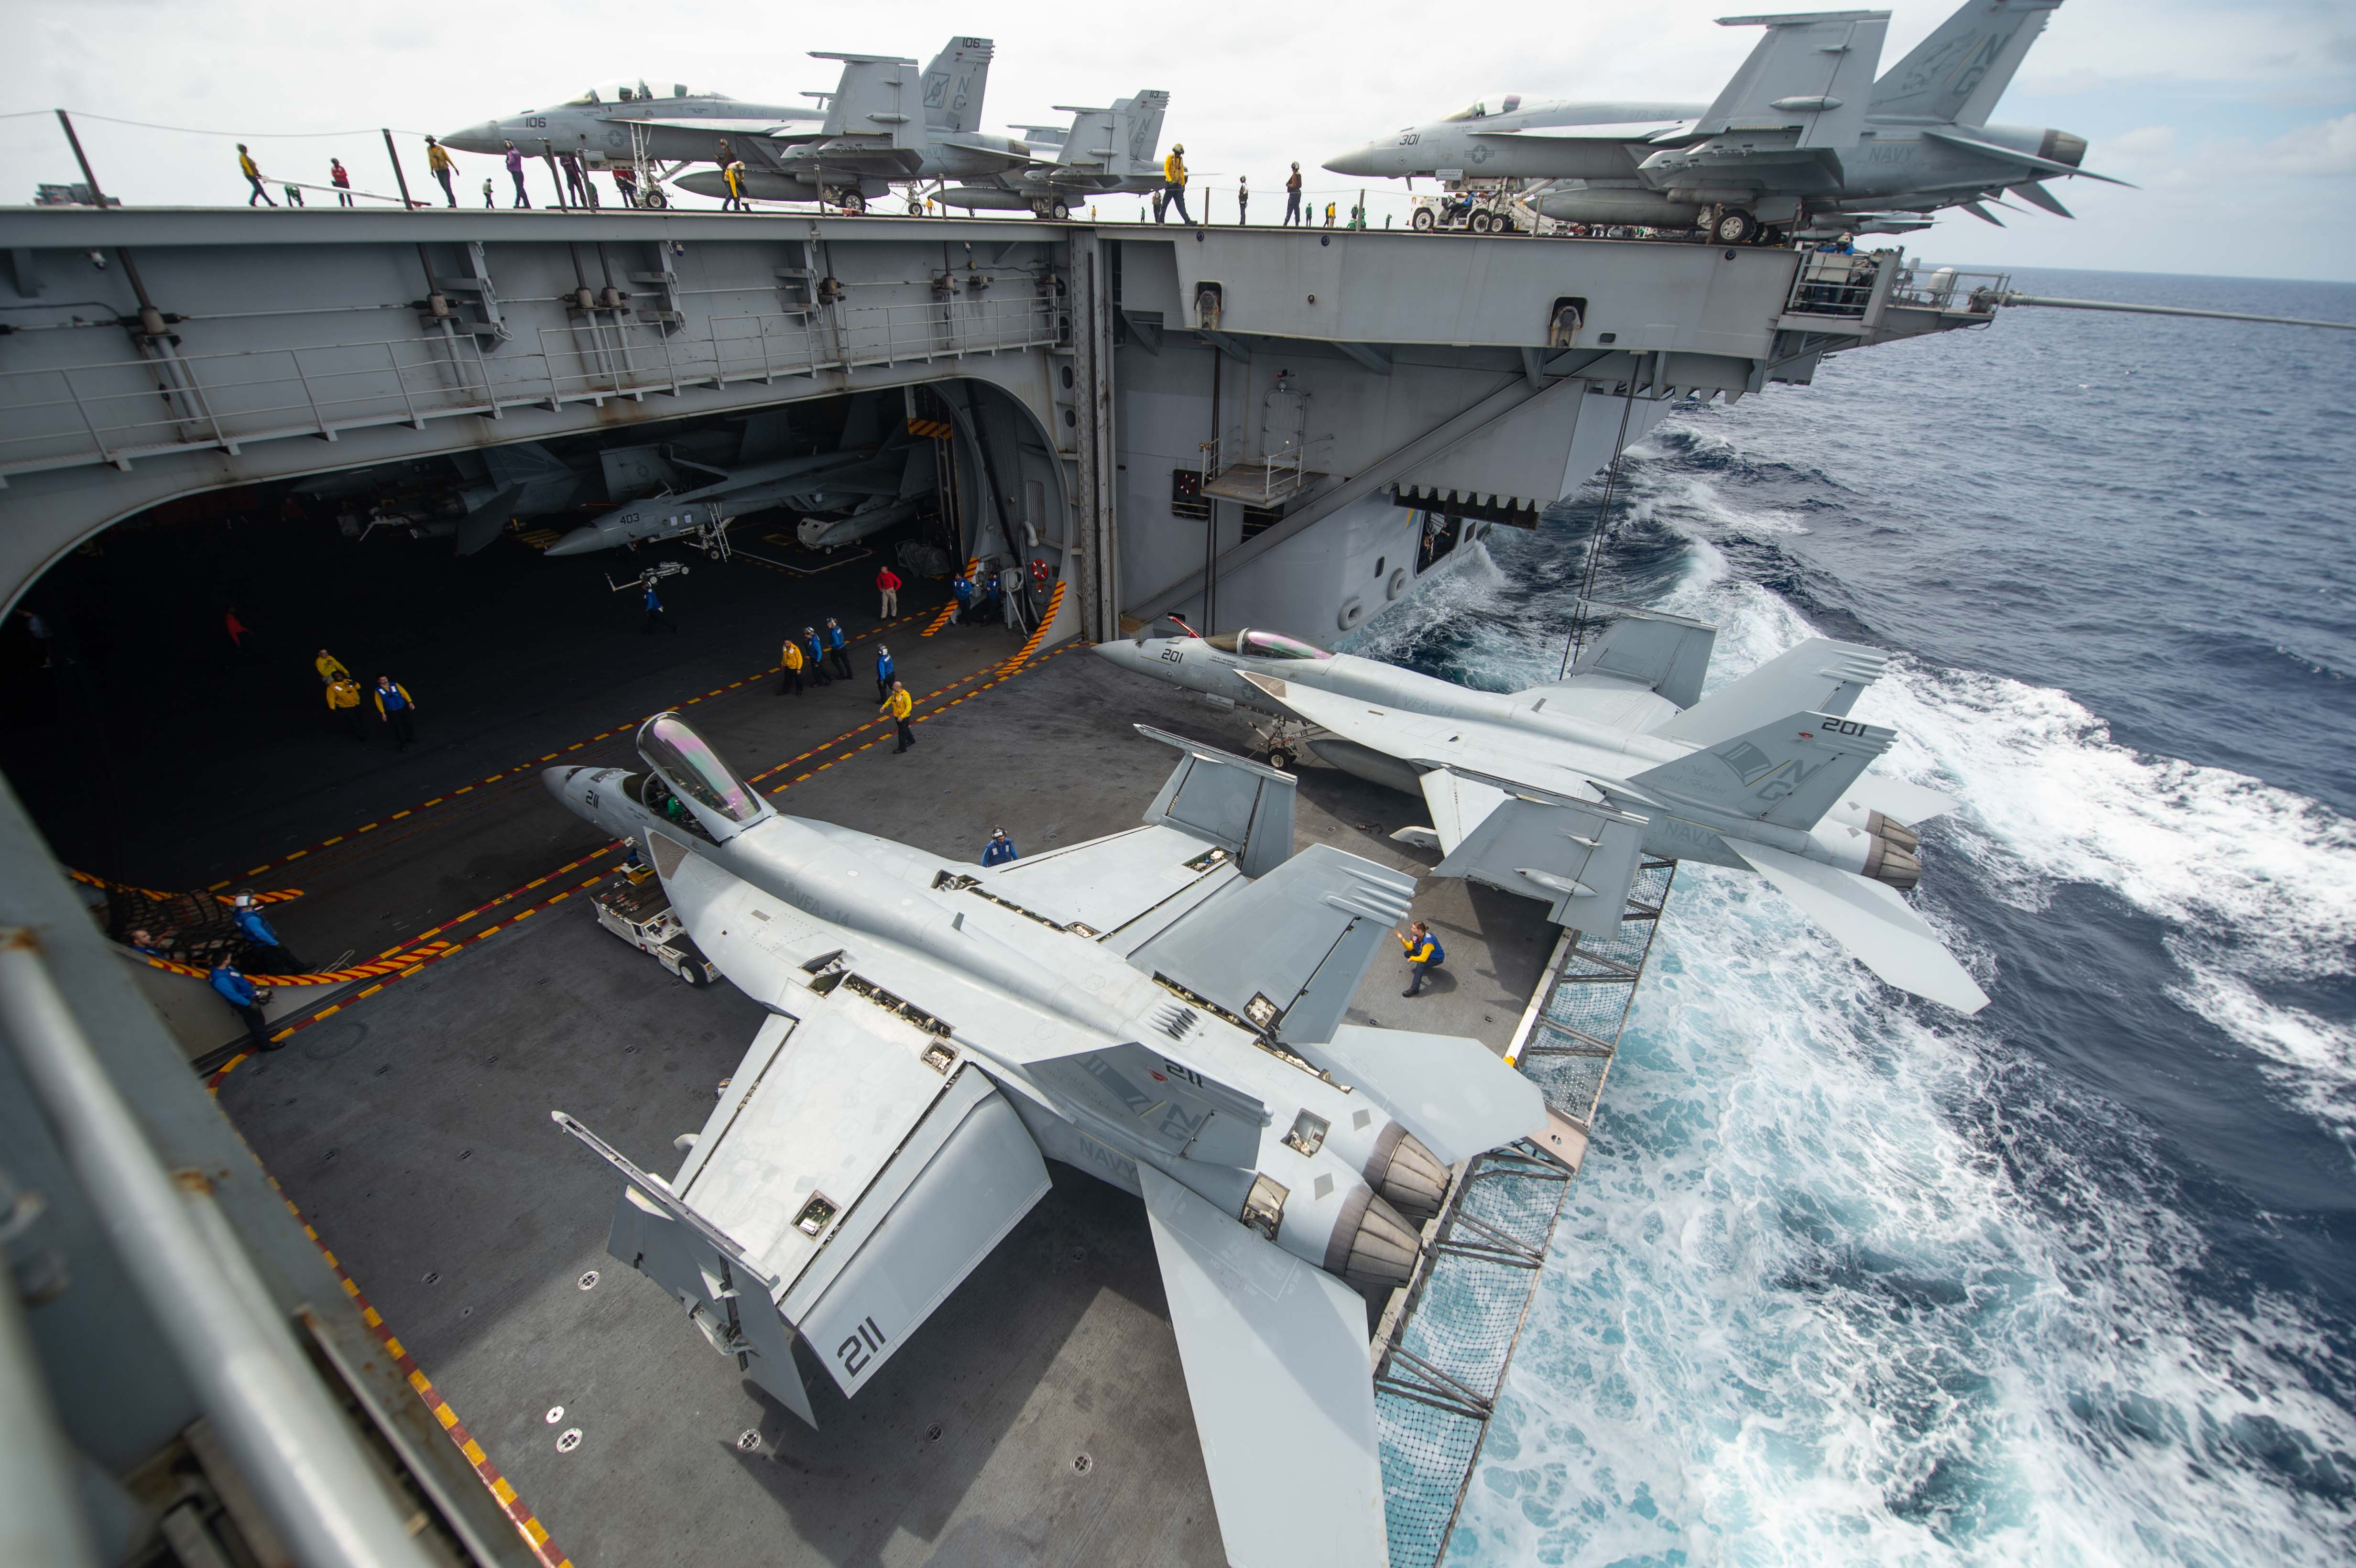 Пара F/A-18E Super Hornet 14-й истребительно-бомбардировочной эскадрильи на подъемнике атомного авианосца  USS John C. Stennis (CVN 74), типа Nimitz, фото сделано 3 декабря 2018 года в Индийском океане (John C. Stennis осуществляет повседневные мероприятия в зоне ответственности Тихоокеанской флотилии ВМС США)